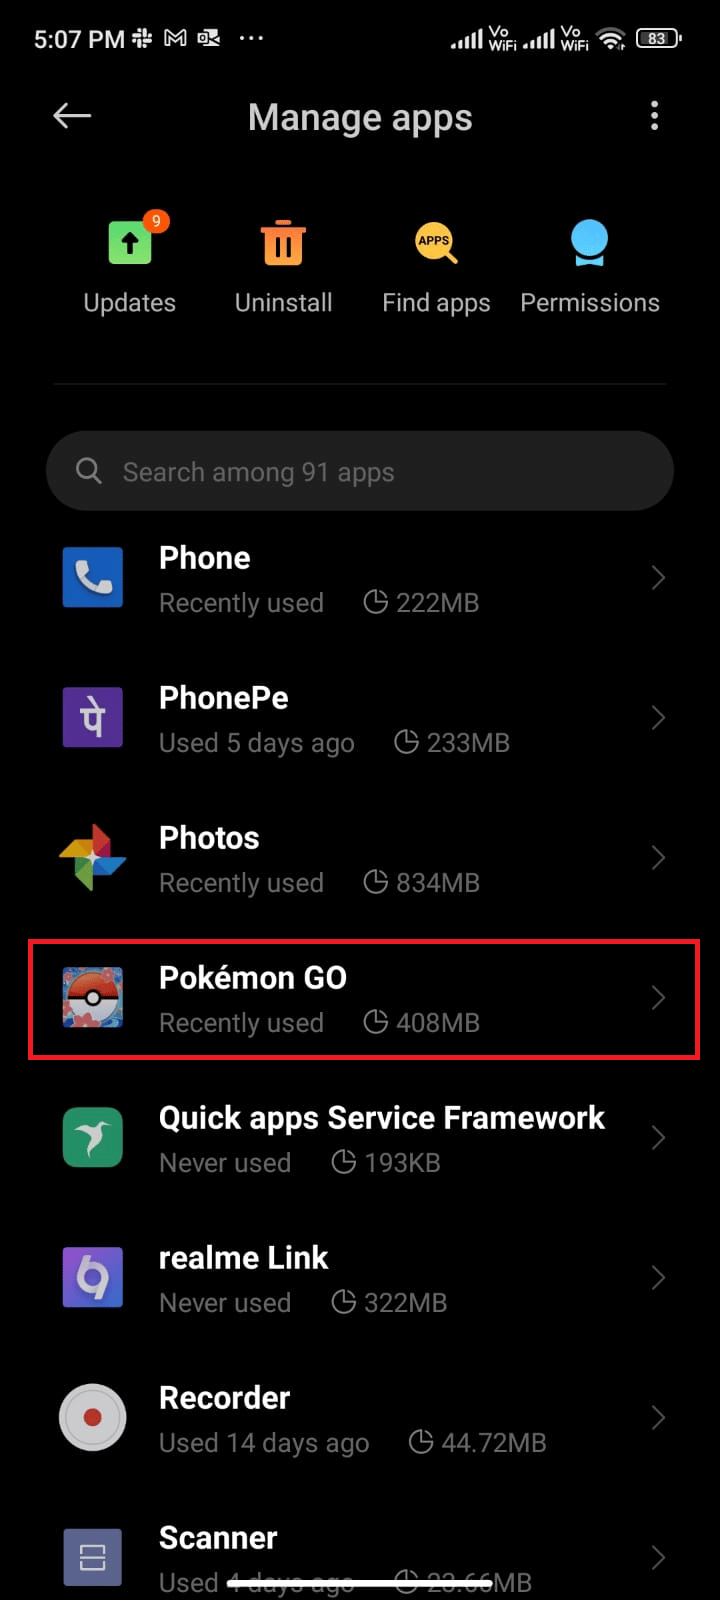 tap on Manage apps followed by Pokémon Go. Fix Pokémon Go Error 26